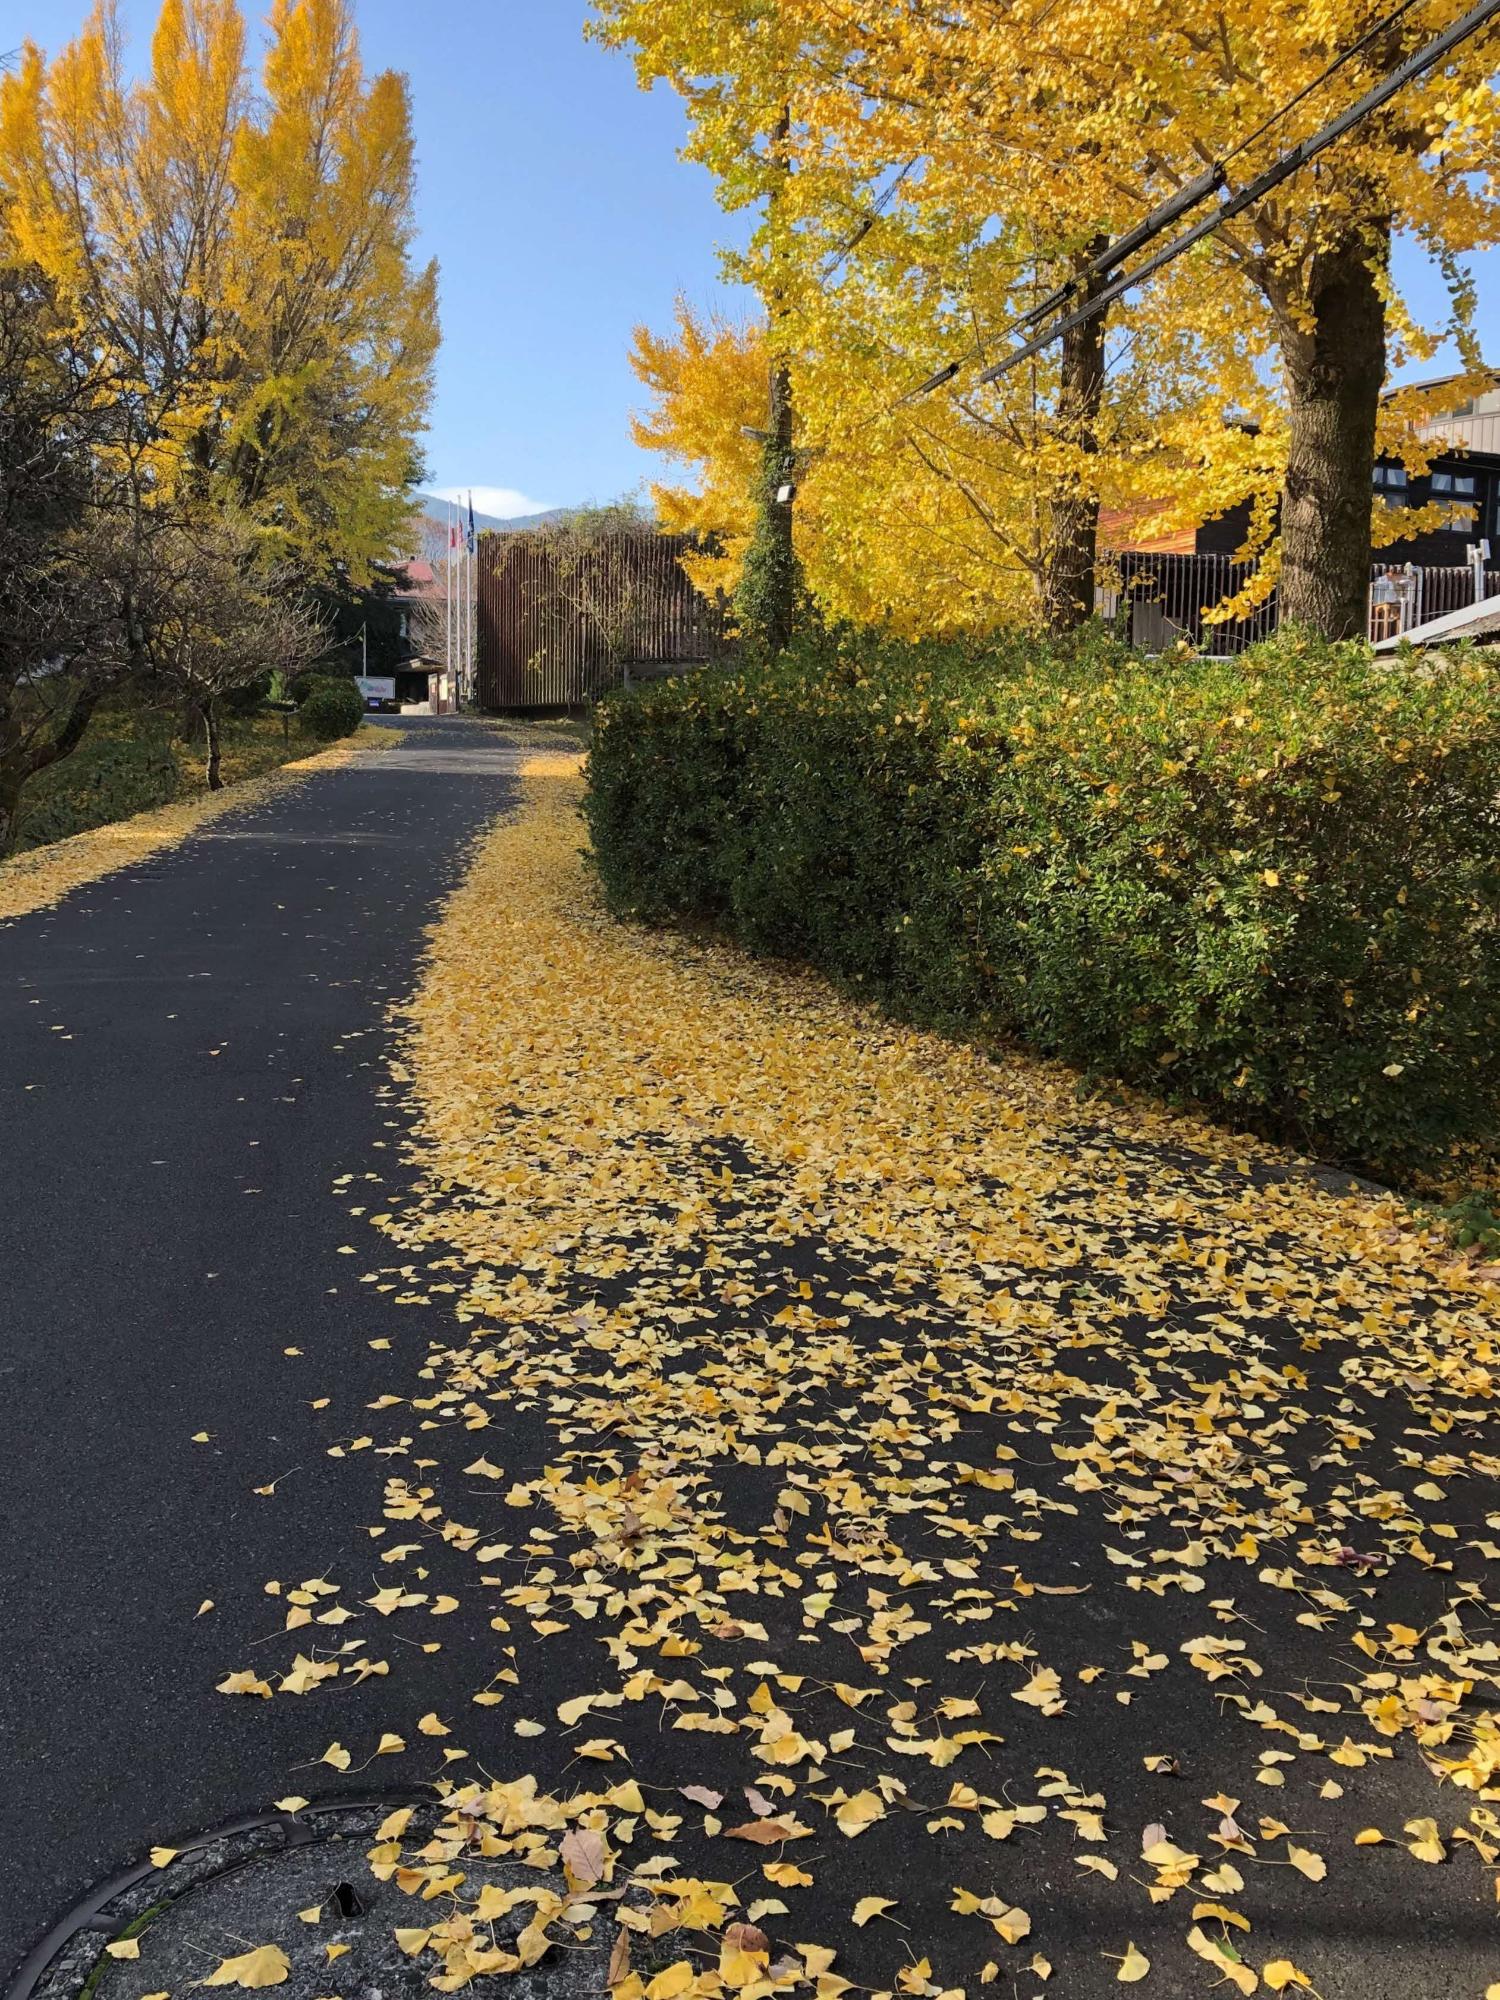 道路に落ちたイチョウの葉が、両脇に集まっている様子